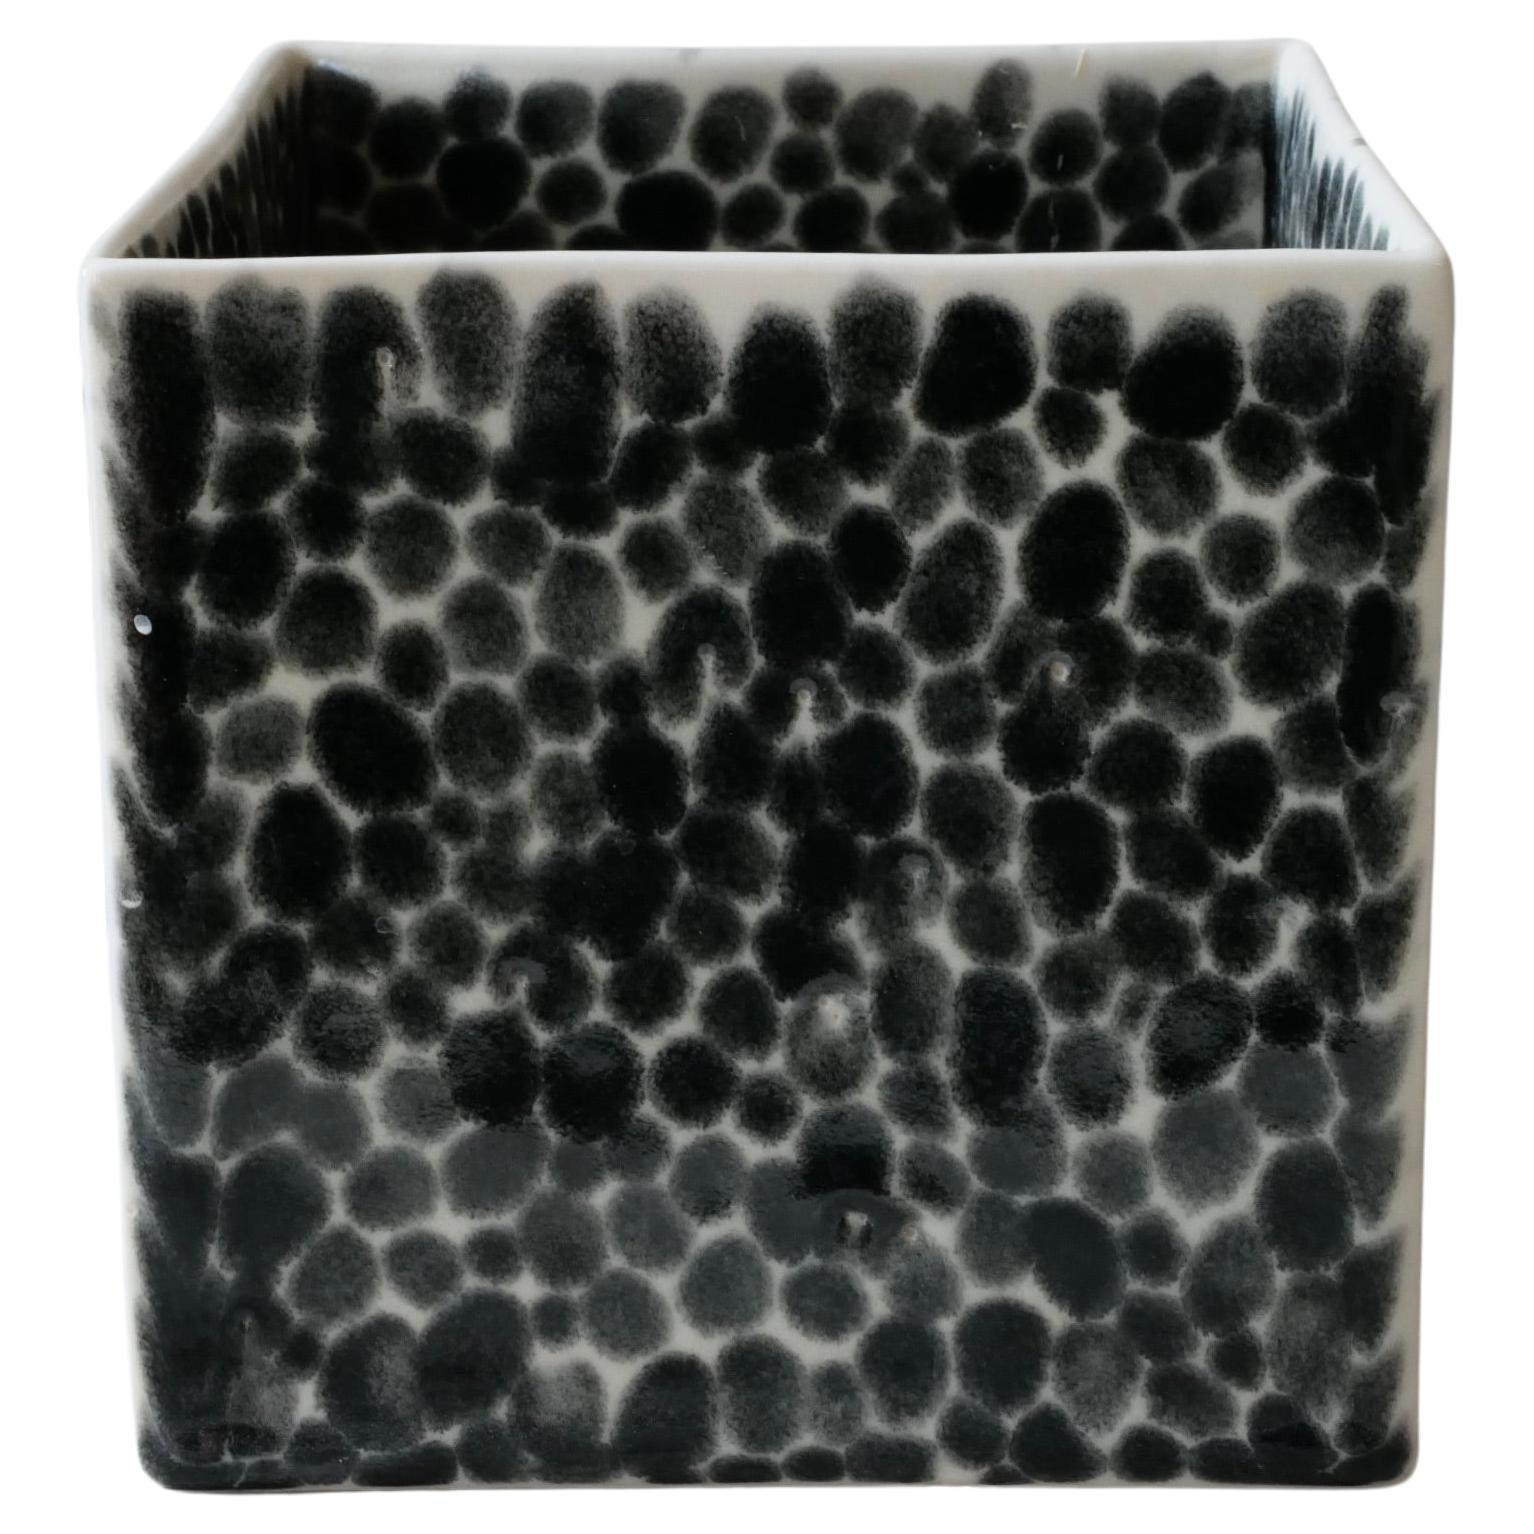 Porzellan-Würfelvase mit schwarzen Punkten von Lana Kova